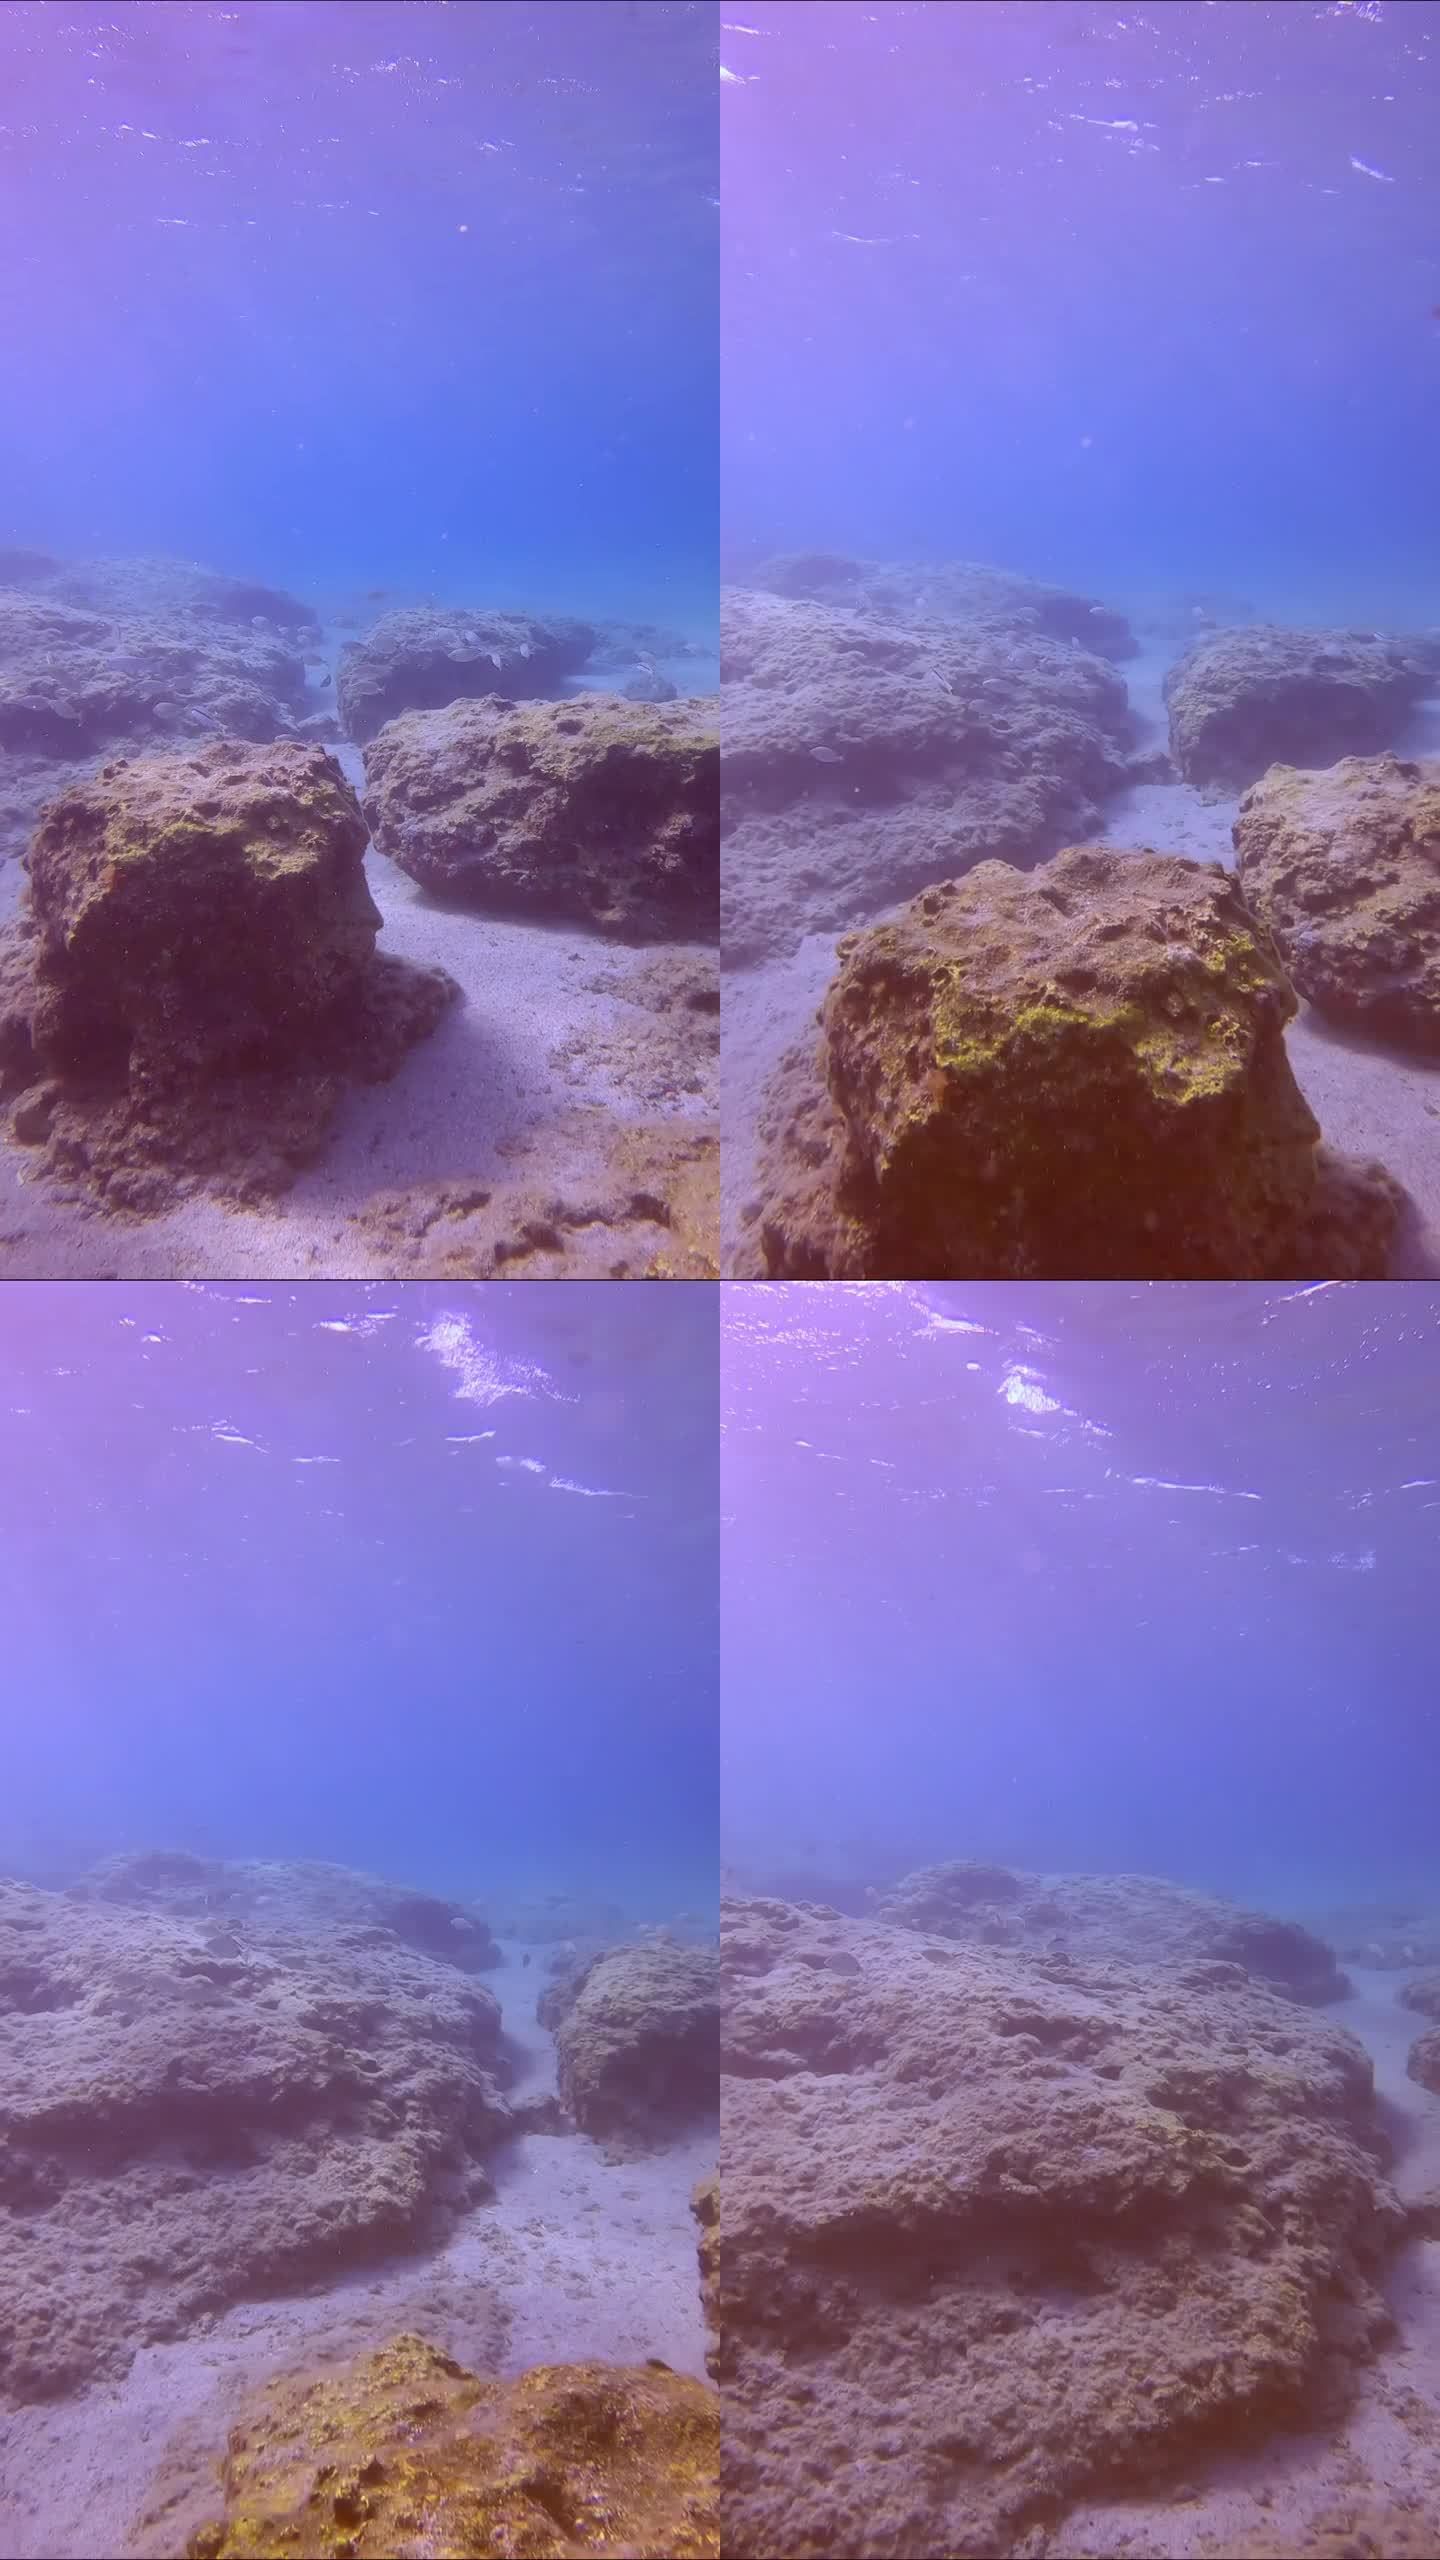 一群大理石纹刺足鱼(Siganus rivulatus)游过岩石海床